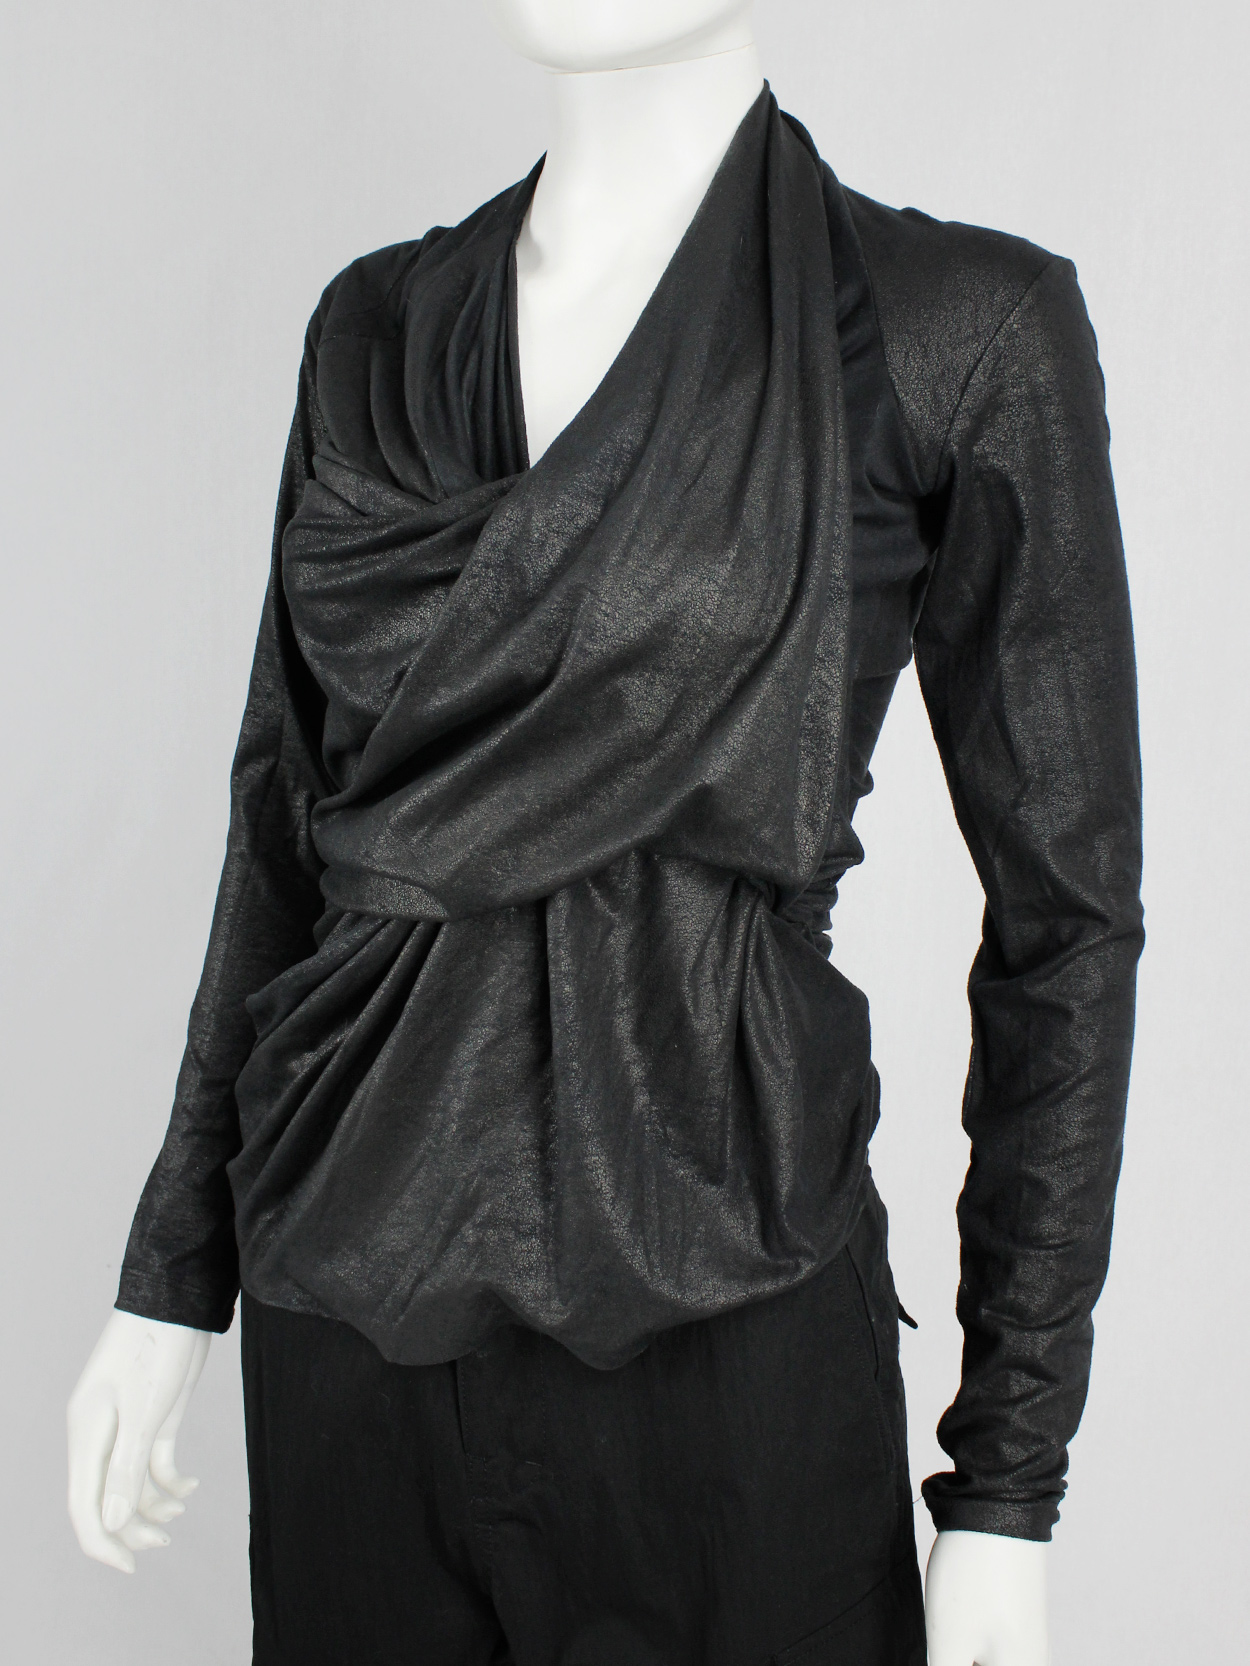 af Vandevorst black diagonal jumper with heavily gathered draping fall 2010 (11)